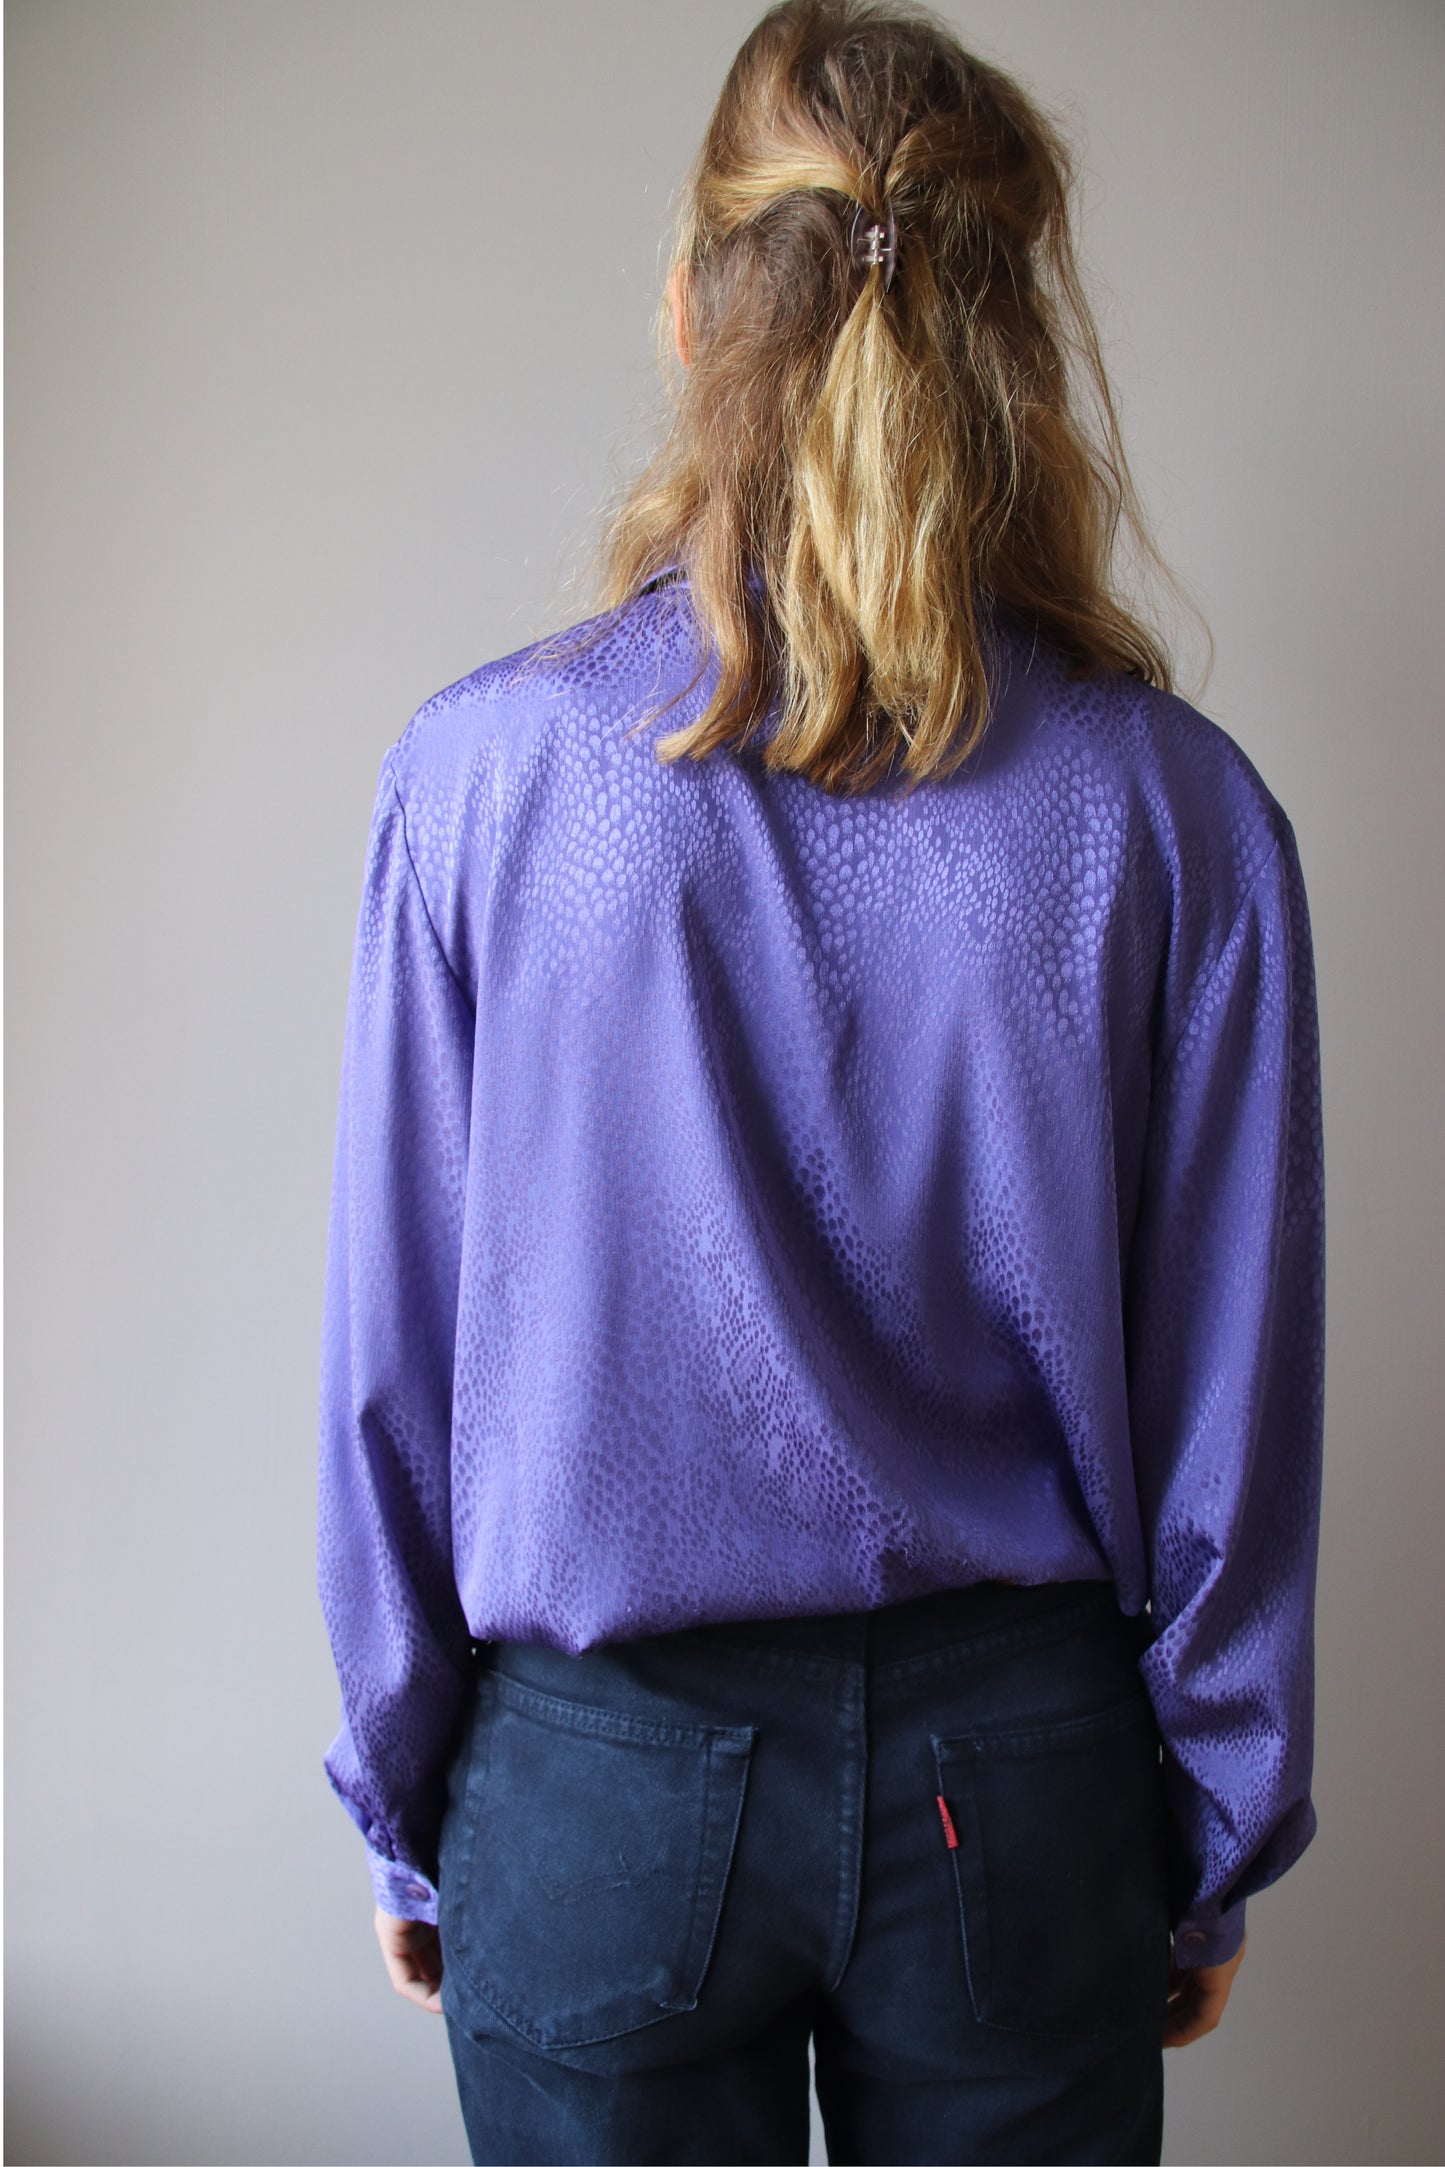 maud damast blouse - XL